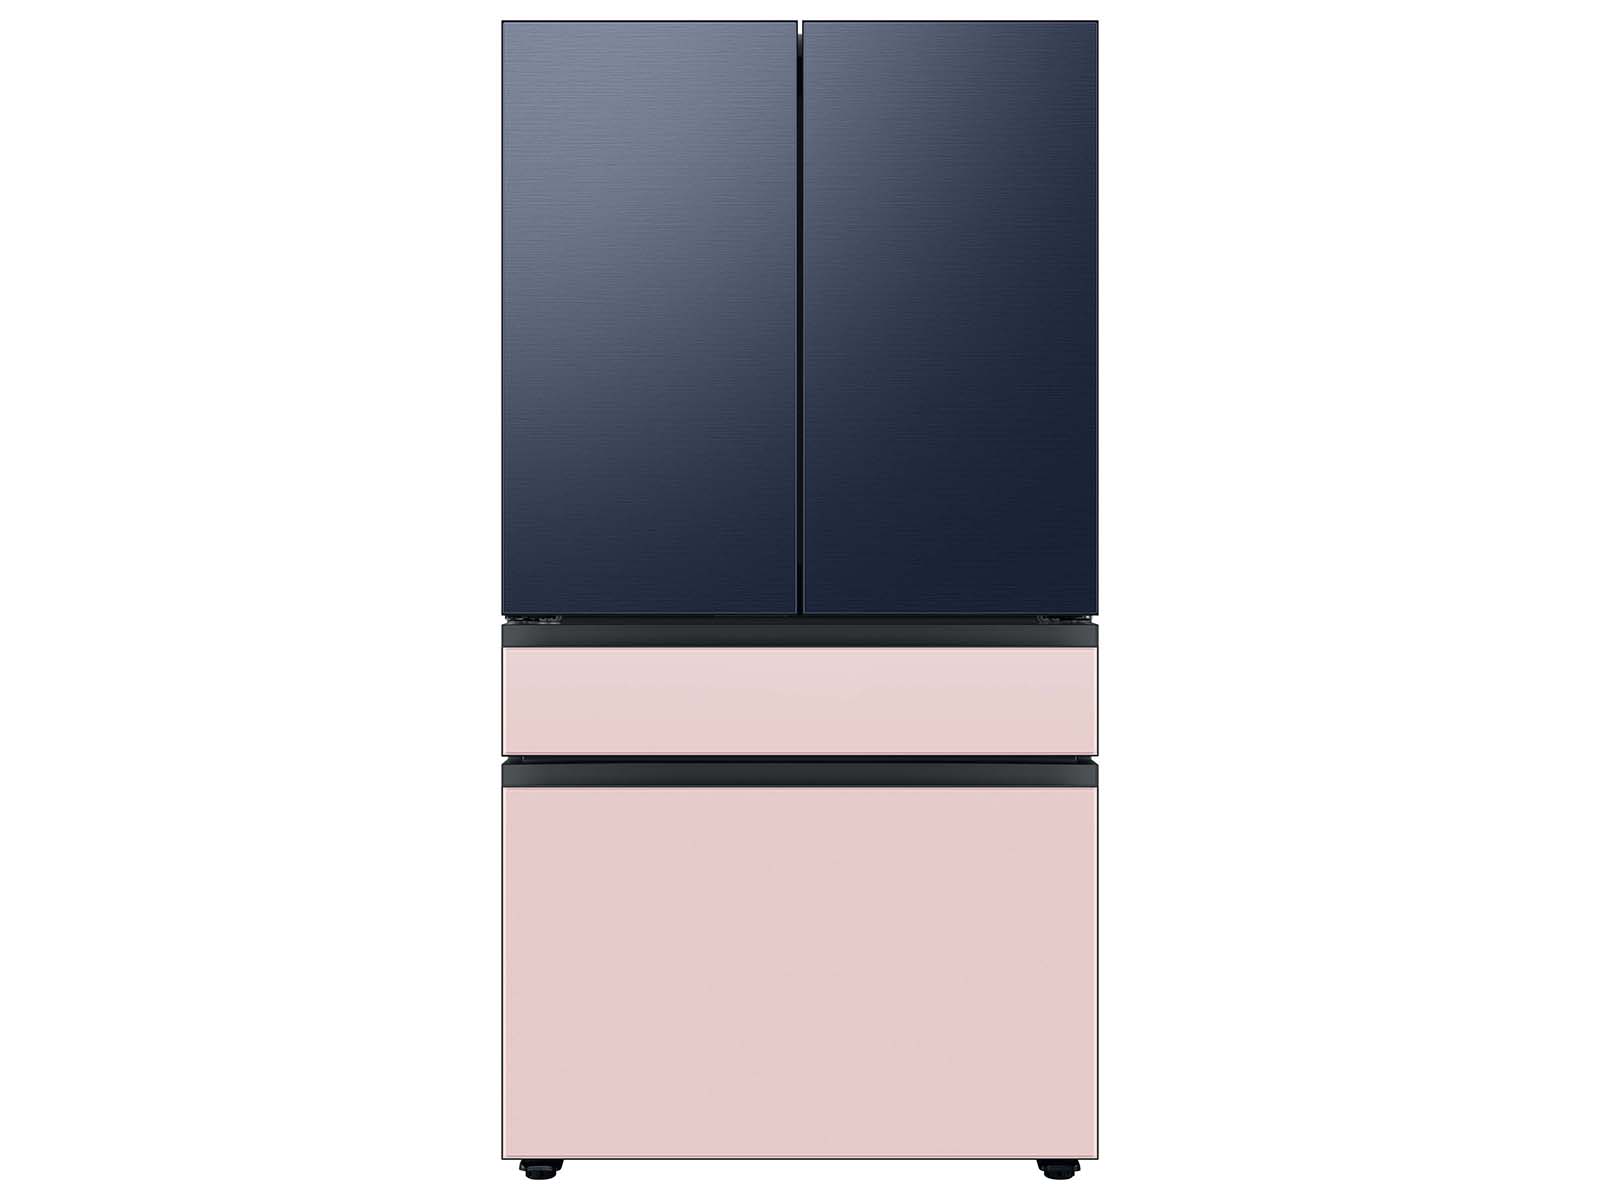 Thumbnail image of Bespoke 4-Door French Door Refrigerator Panel in Pink Glass - Bottom Panel